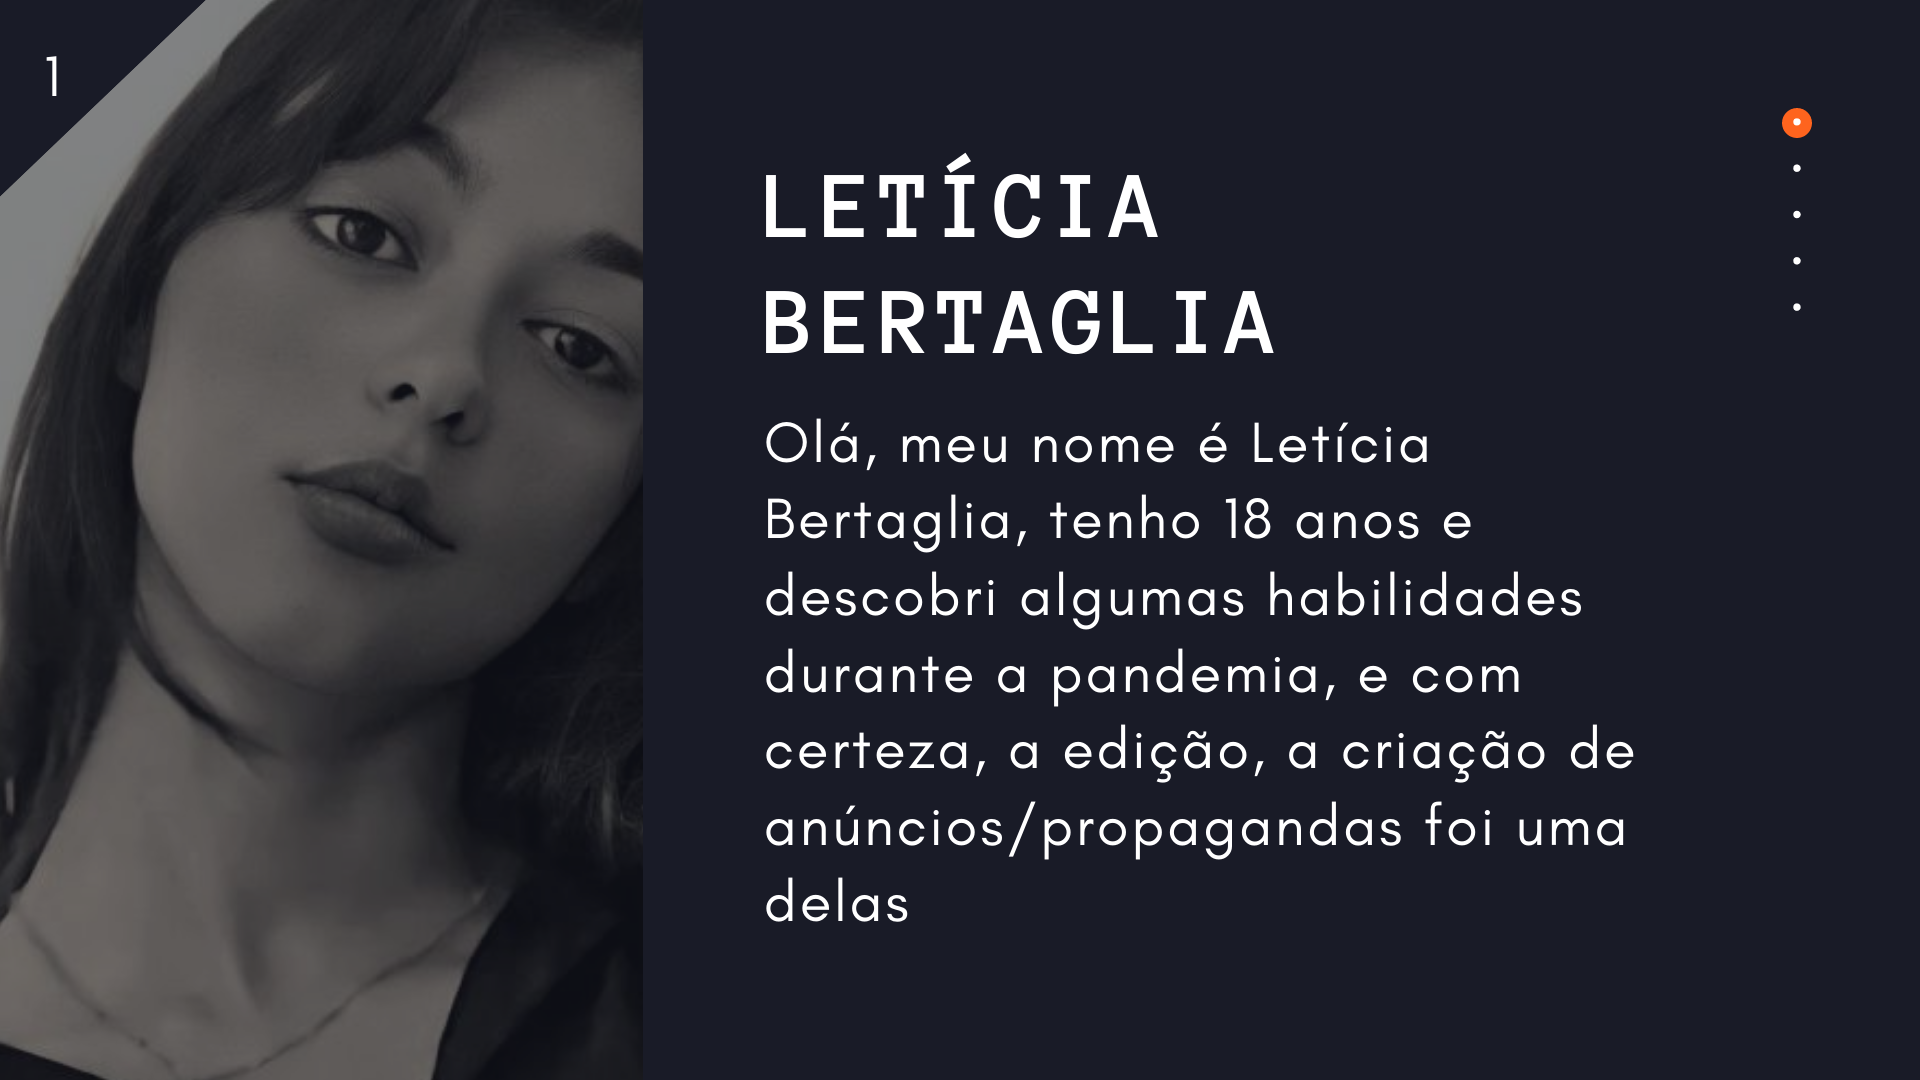 RA3ieay
BERTAGLIA

Ola, meu nome é Leticia
Bertaglia, tenho 18 anos e
descobri algumas habilidades
durante a pandemia, e com
certeza, a edi¢do, a criagdo de
anuncios/propagandas foi uma
delas